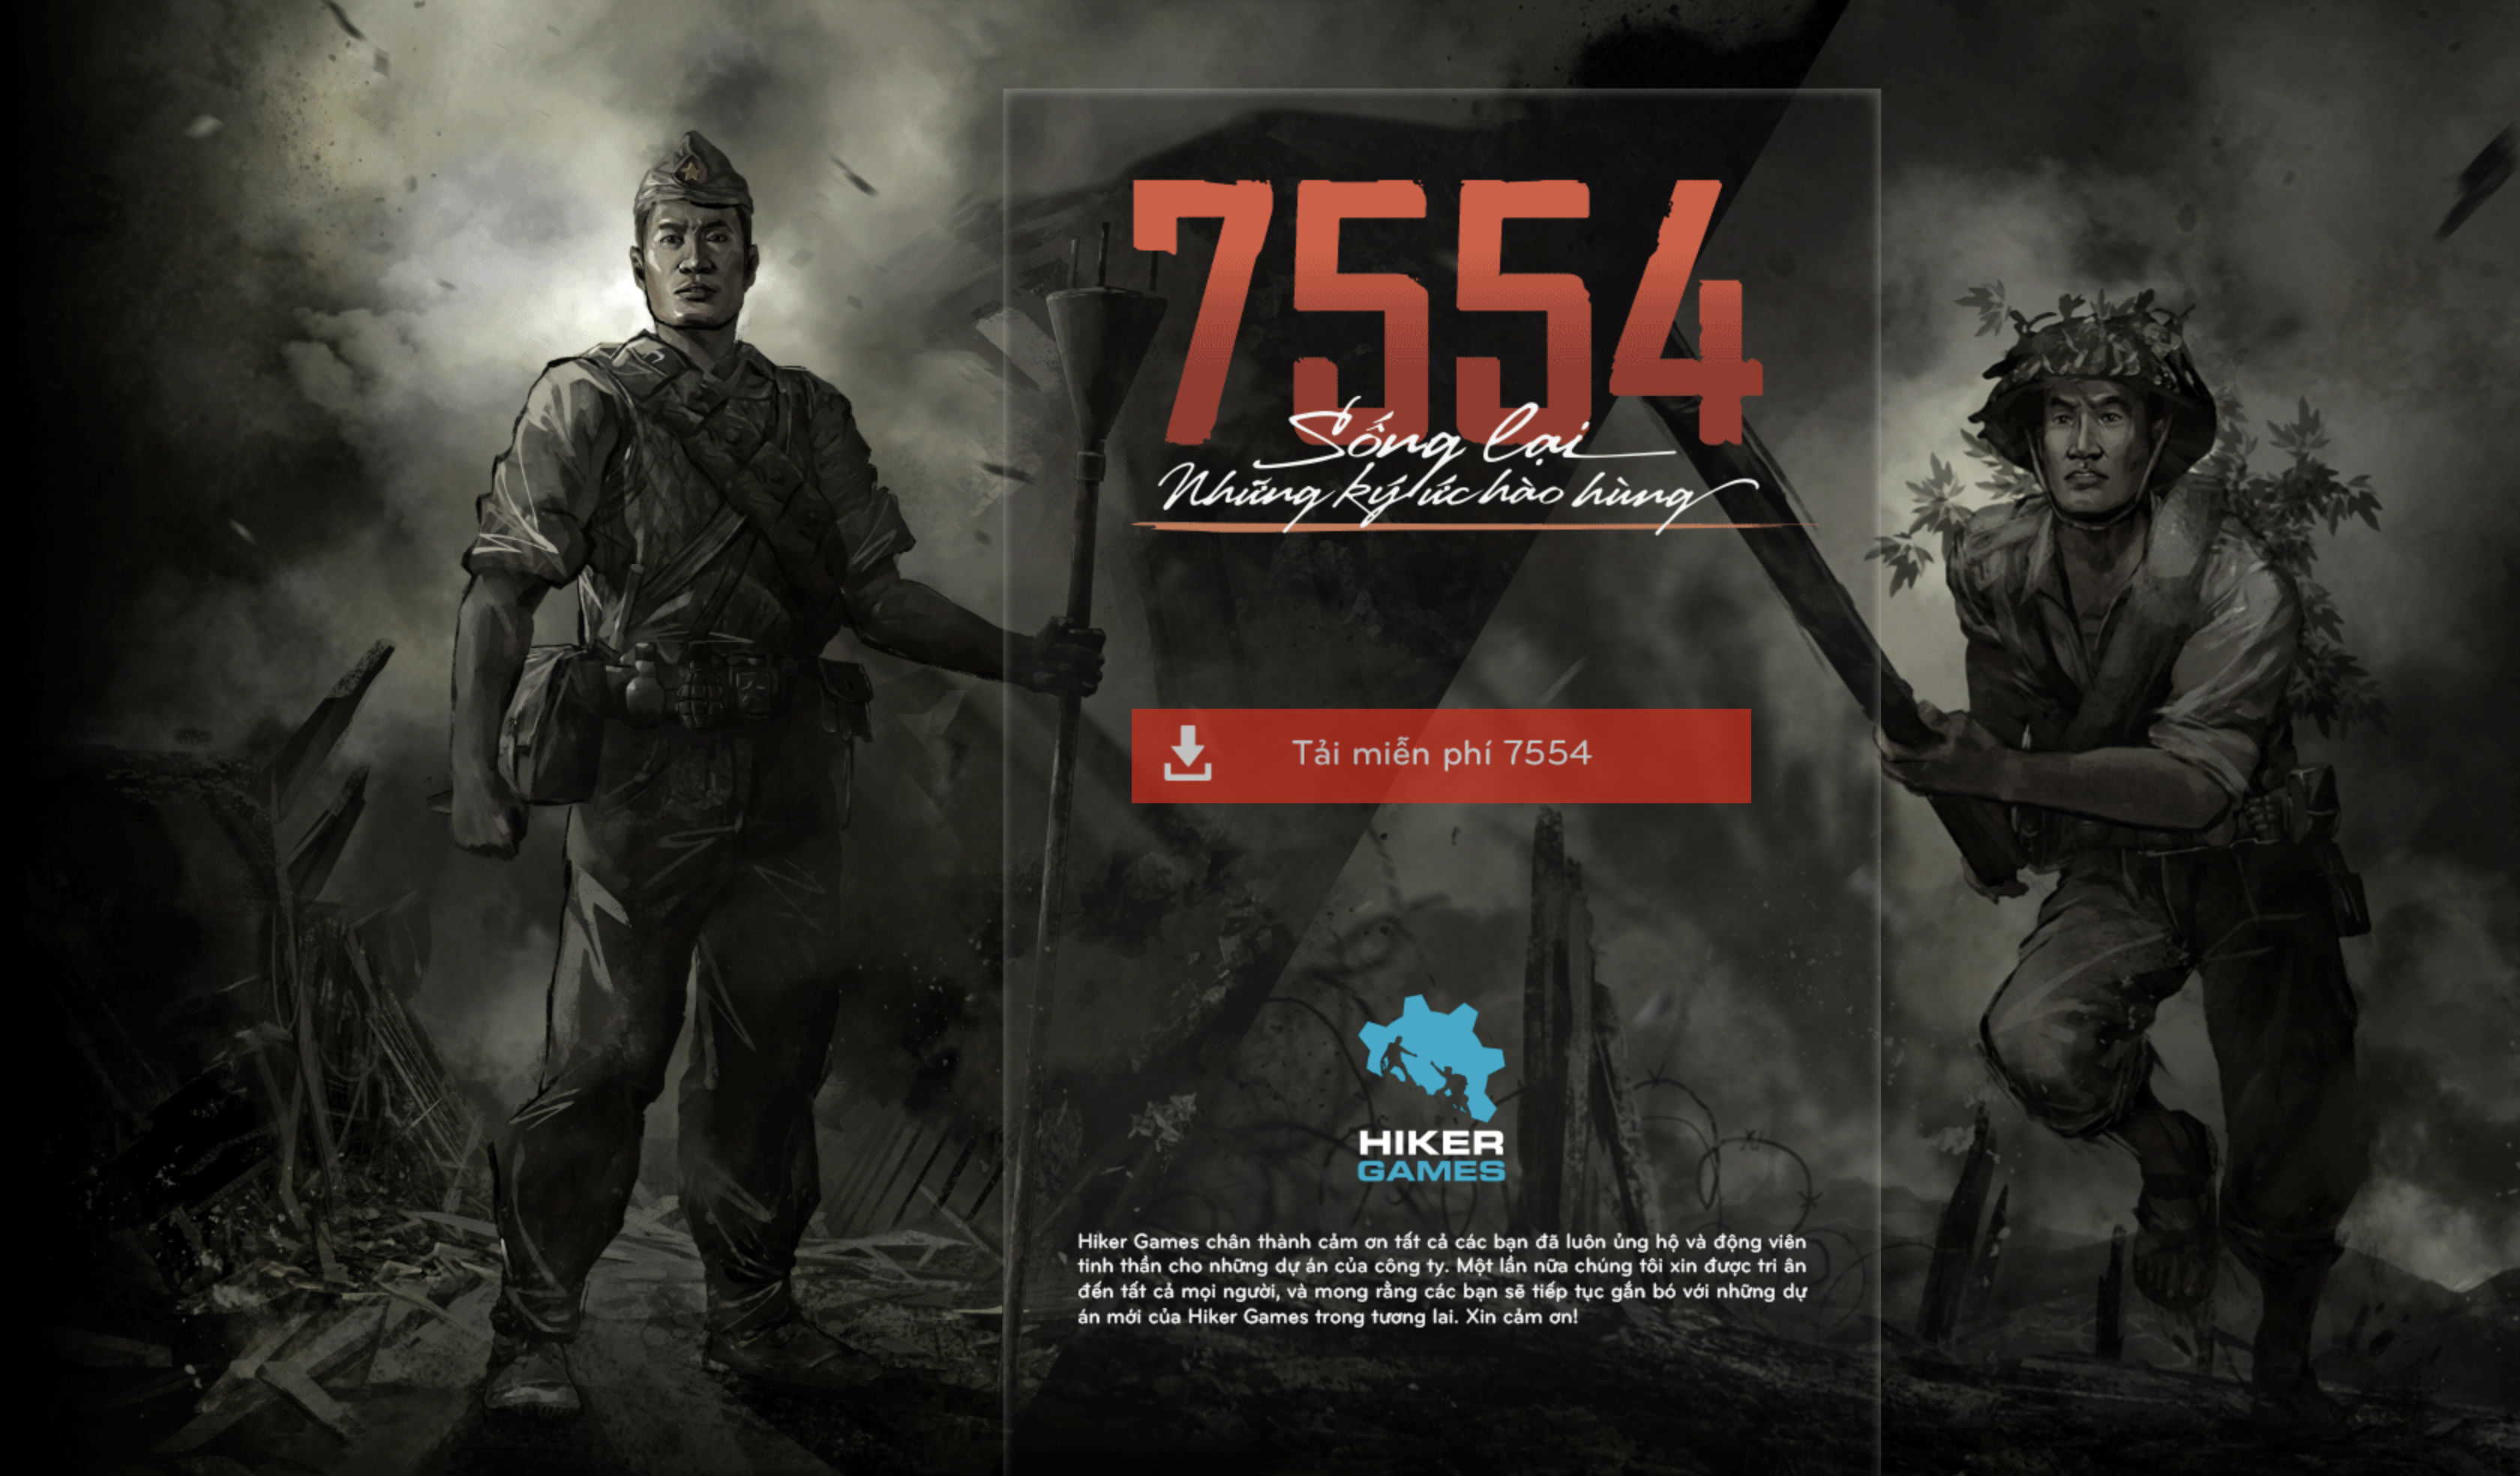 Tựa game "7554 - Sống lại những ký ức hào hùng" hiện đang cho tải về miễn phí